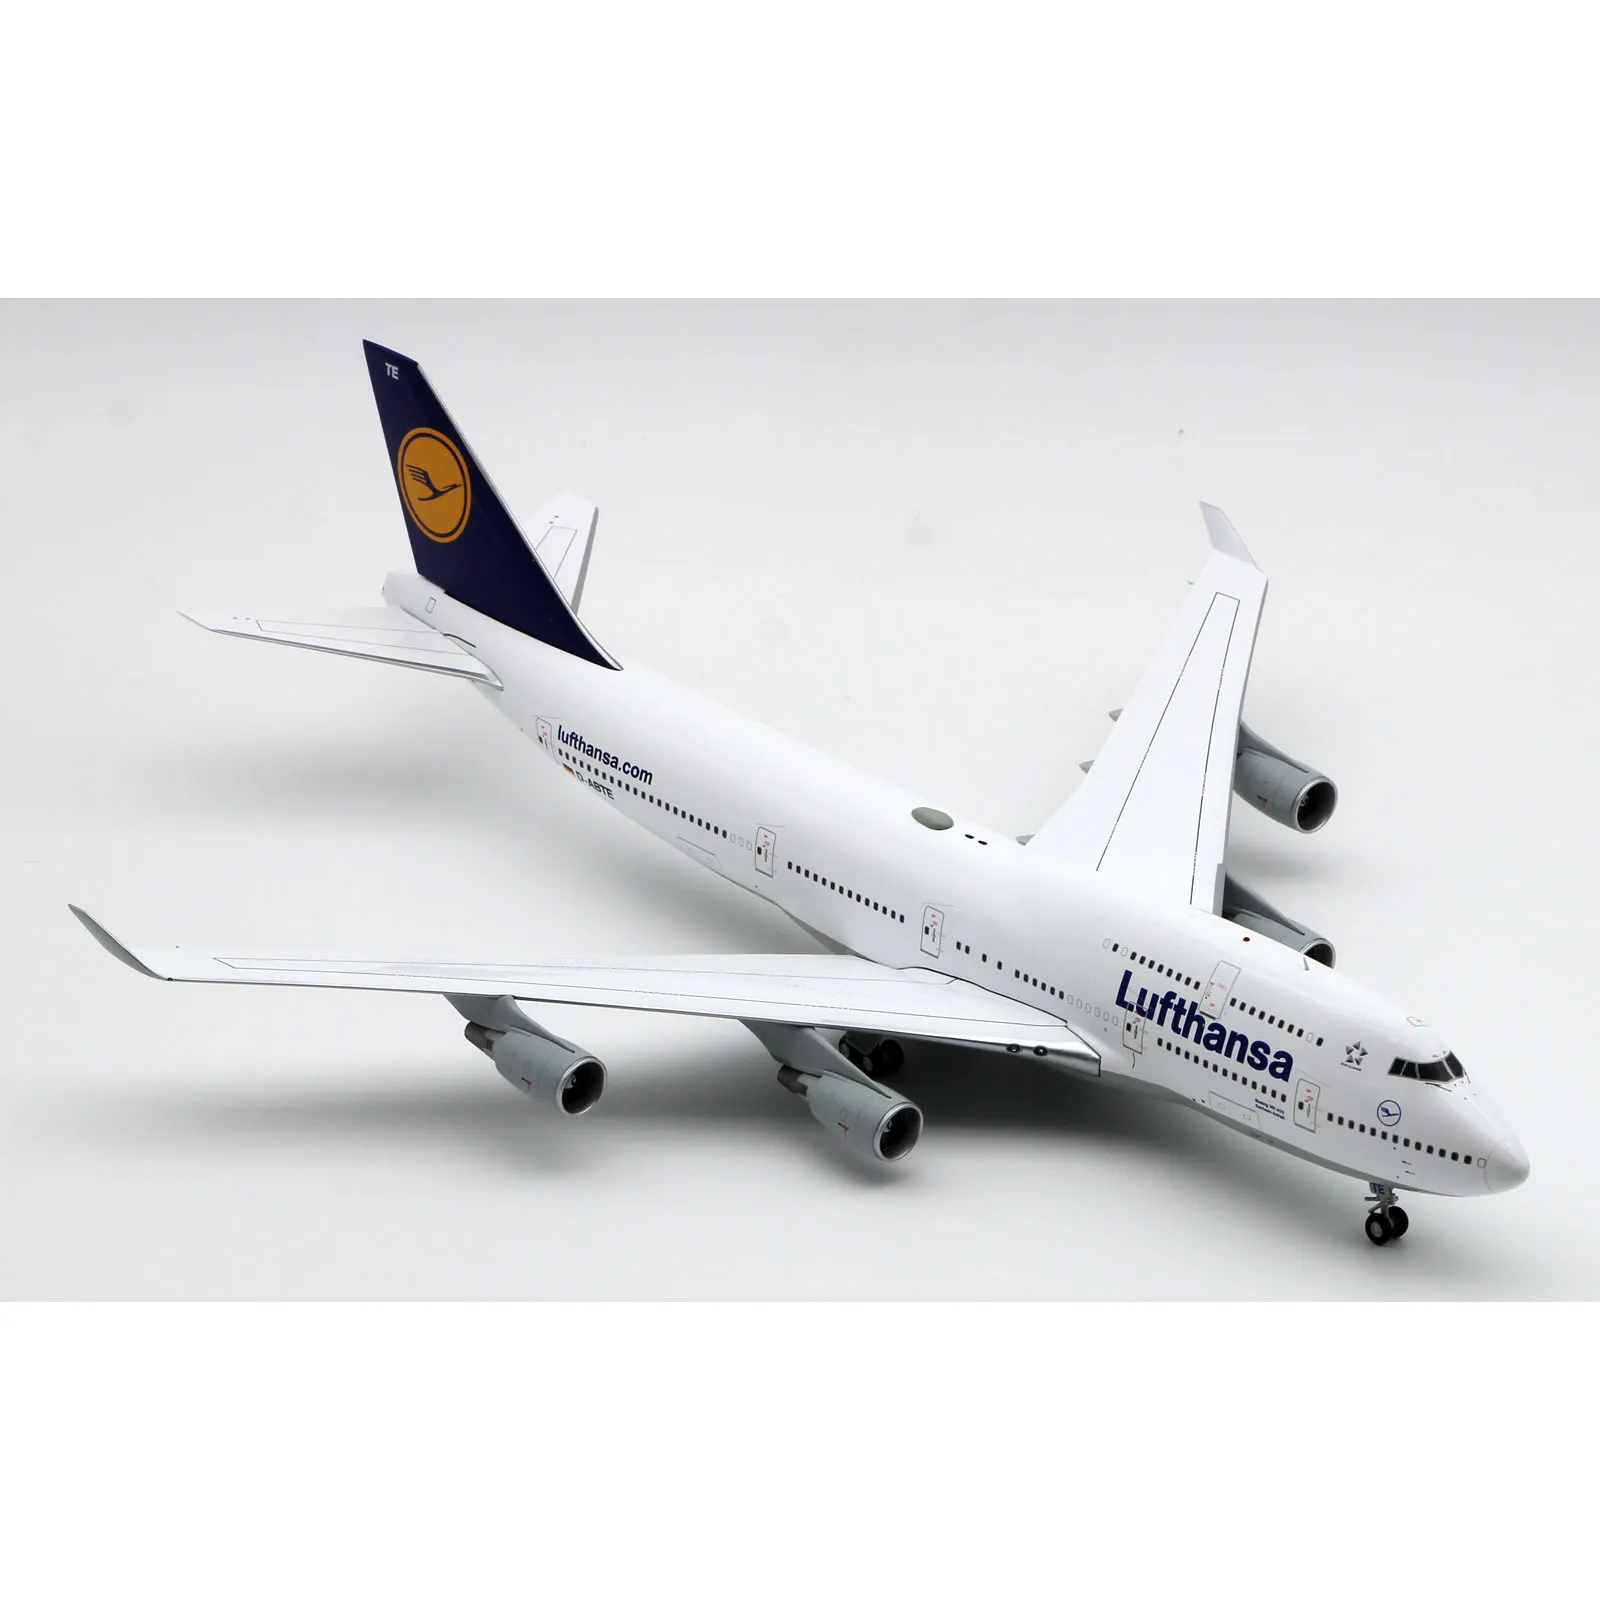 Avión coleccionable de aleación, modelo de avión Jet de aleación XX20315, regalo JC Wings 1:200 Lufthansa "StarAlliance", Boeing B747-400, fundido a presión, D-ABTE